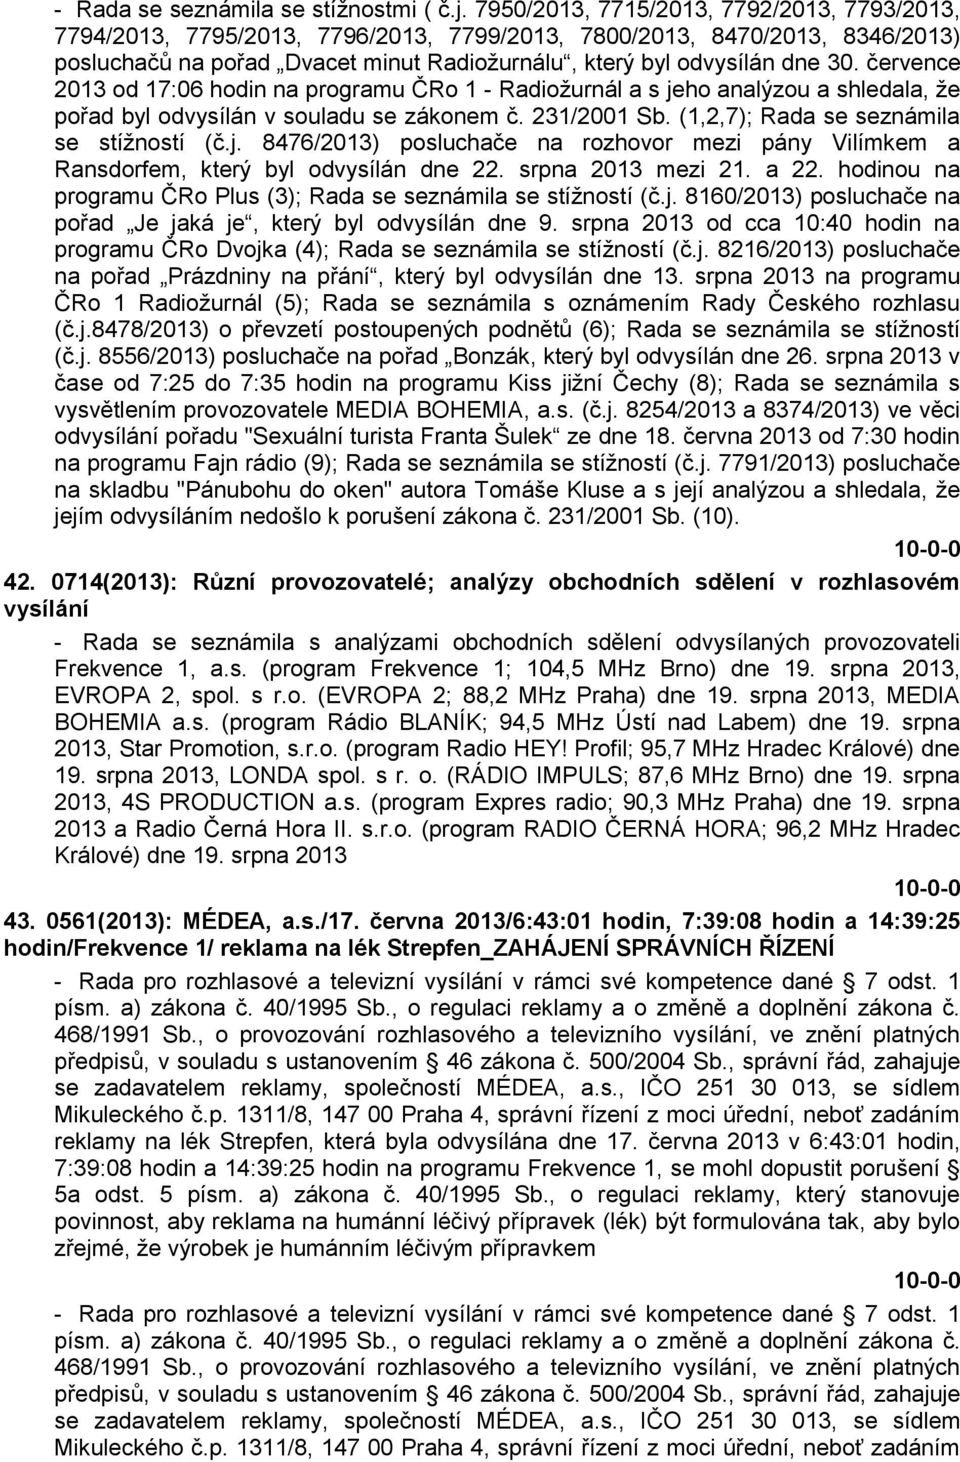 července 2013 od 17:06 hodin na programu ČRo 1 - Radiožurnál a s jeho analýzou a shledala, že pořad byl odvysílán v souladu se zákonem č. 231/2001 Sb. (1,2,7); Rada se seznámila se stížností (č.j. 8476/2013) posluchače na rozhovor mezi pány Vilímkem a Ransdorfem, který byl odvysílán dne 22.